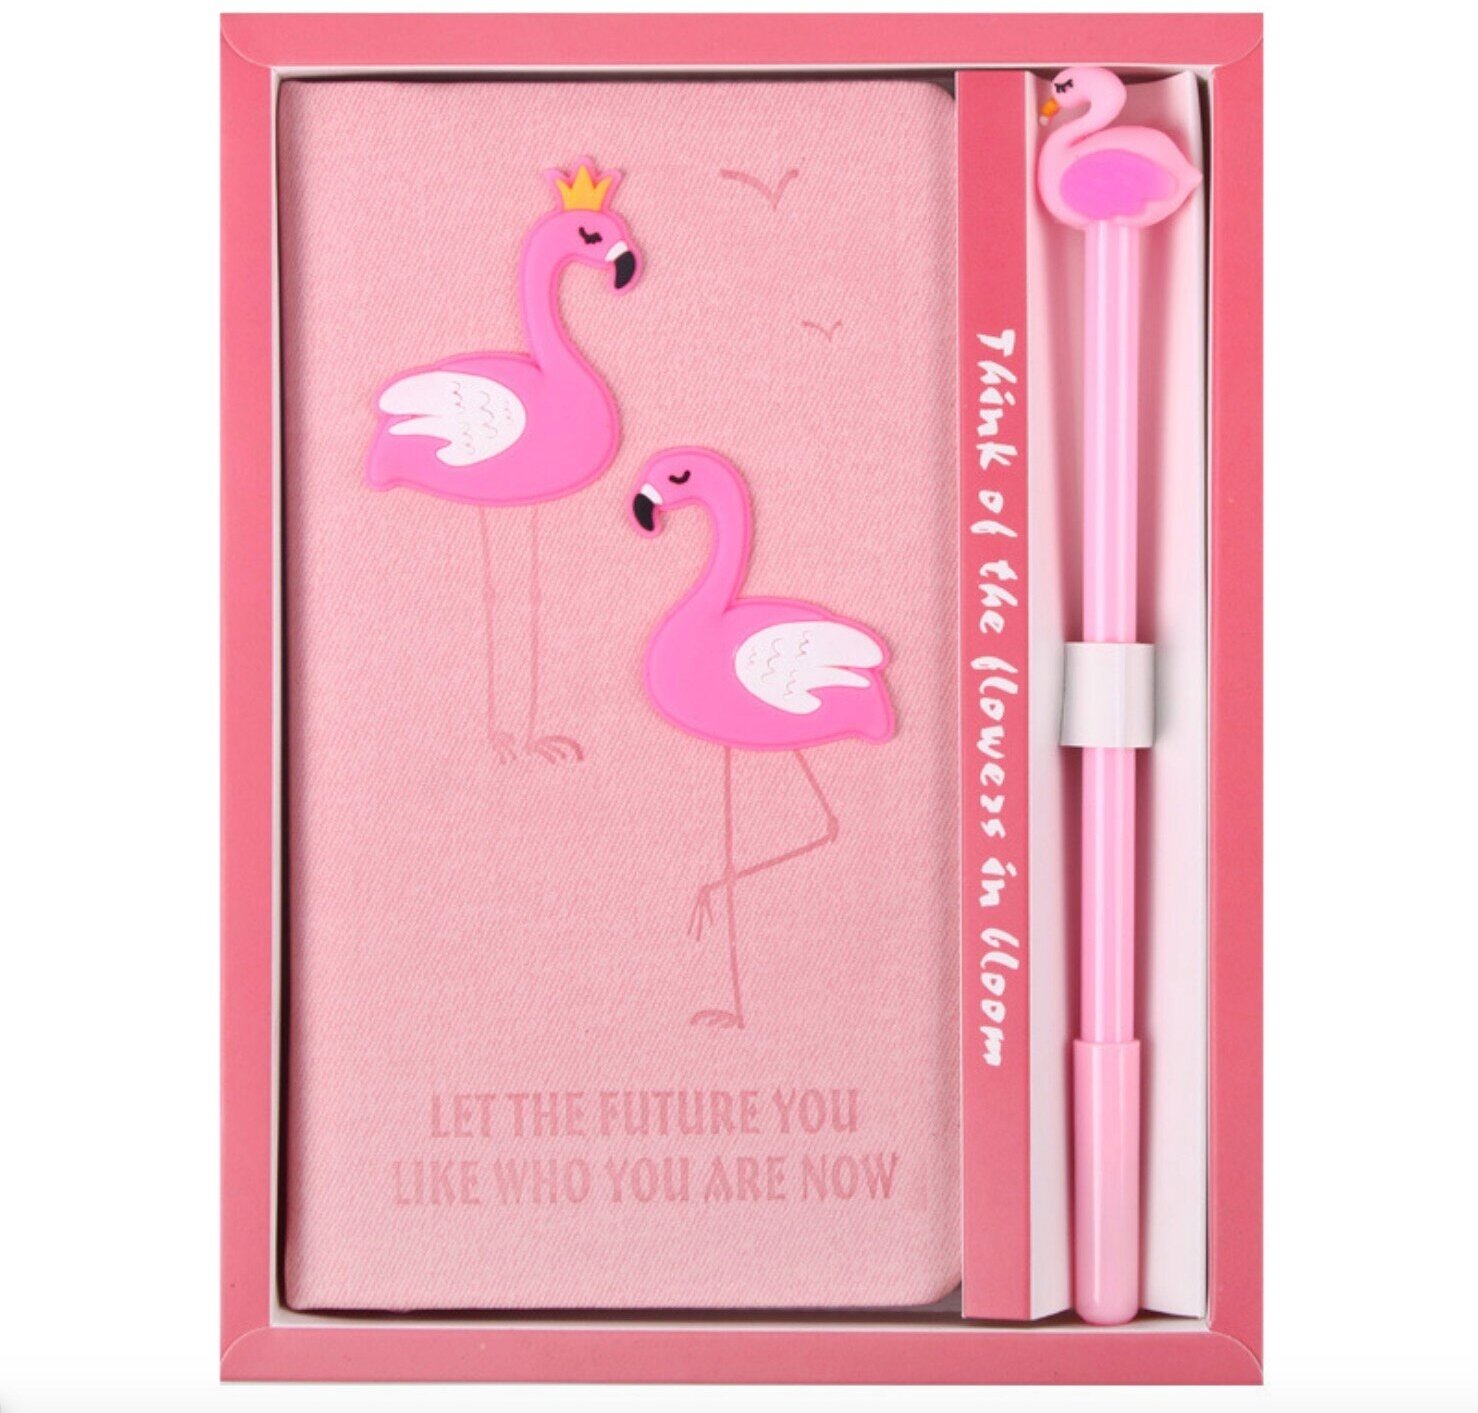 Подарочный набор Чехол. ру M-156547 "Розовый фламинго" блокнот+ручка символический красивый подарок ребенку девочке дочке внучке подруге с.